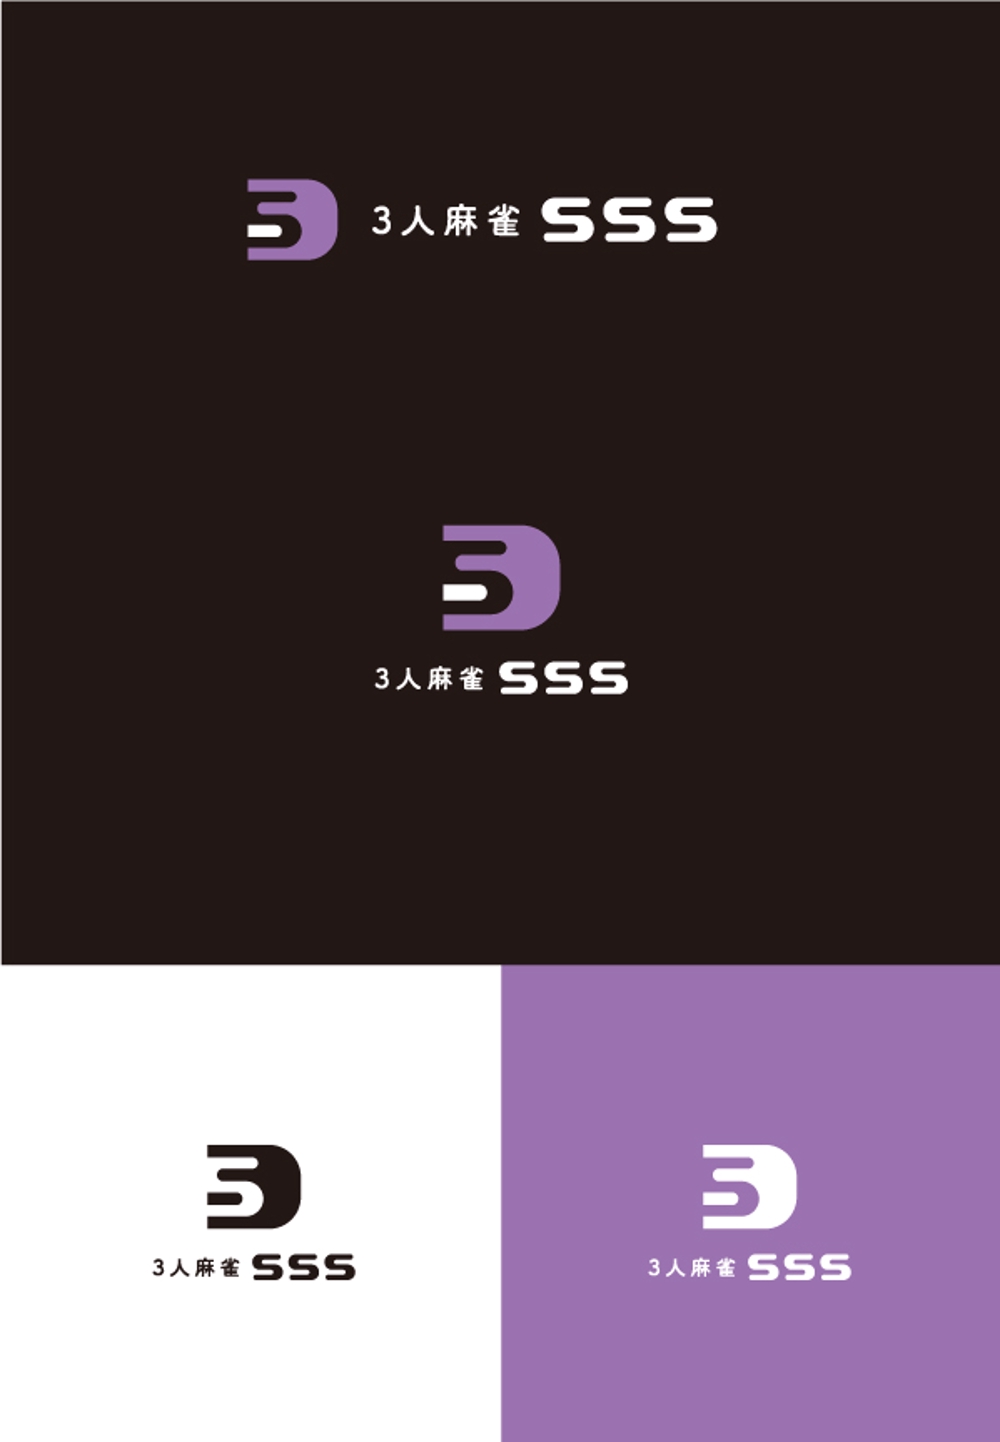 麻雀店『SSS』(すりーえす)のロゴ及び店舗案内に使用するデザイン